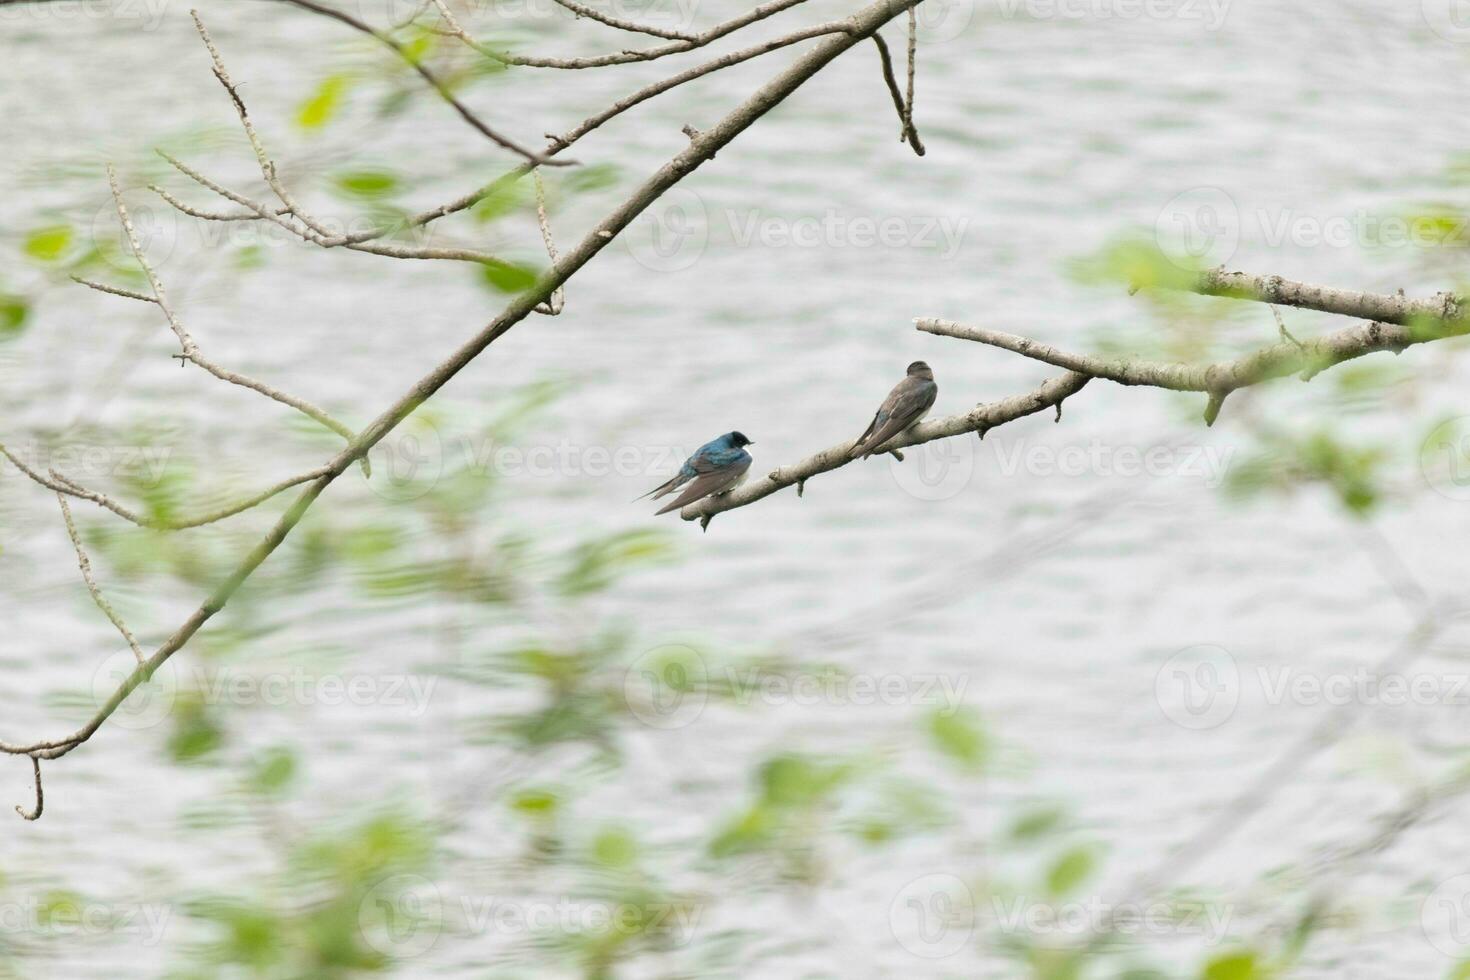 estos dos linda árbol golondrinas fueron sentado en el rama terminado parte superior de un río. el brillante azul pájaro es el masculino. el marrón uno es un femenino. estos dos son relajante mientras esperando para insectos a comer. foto